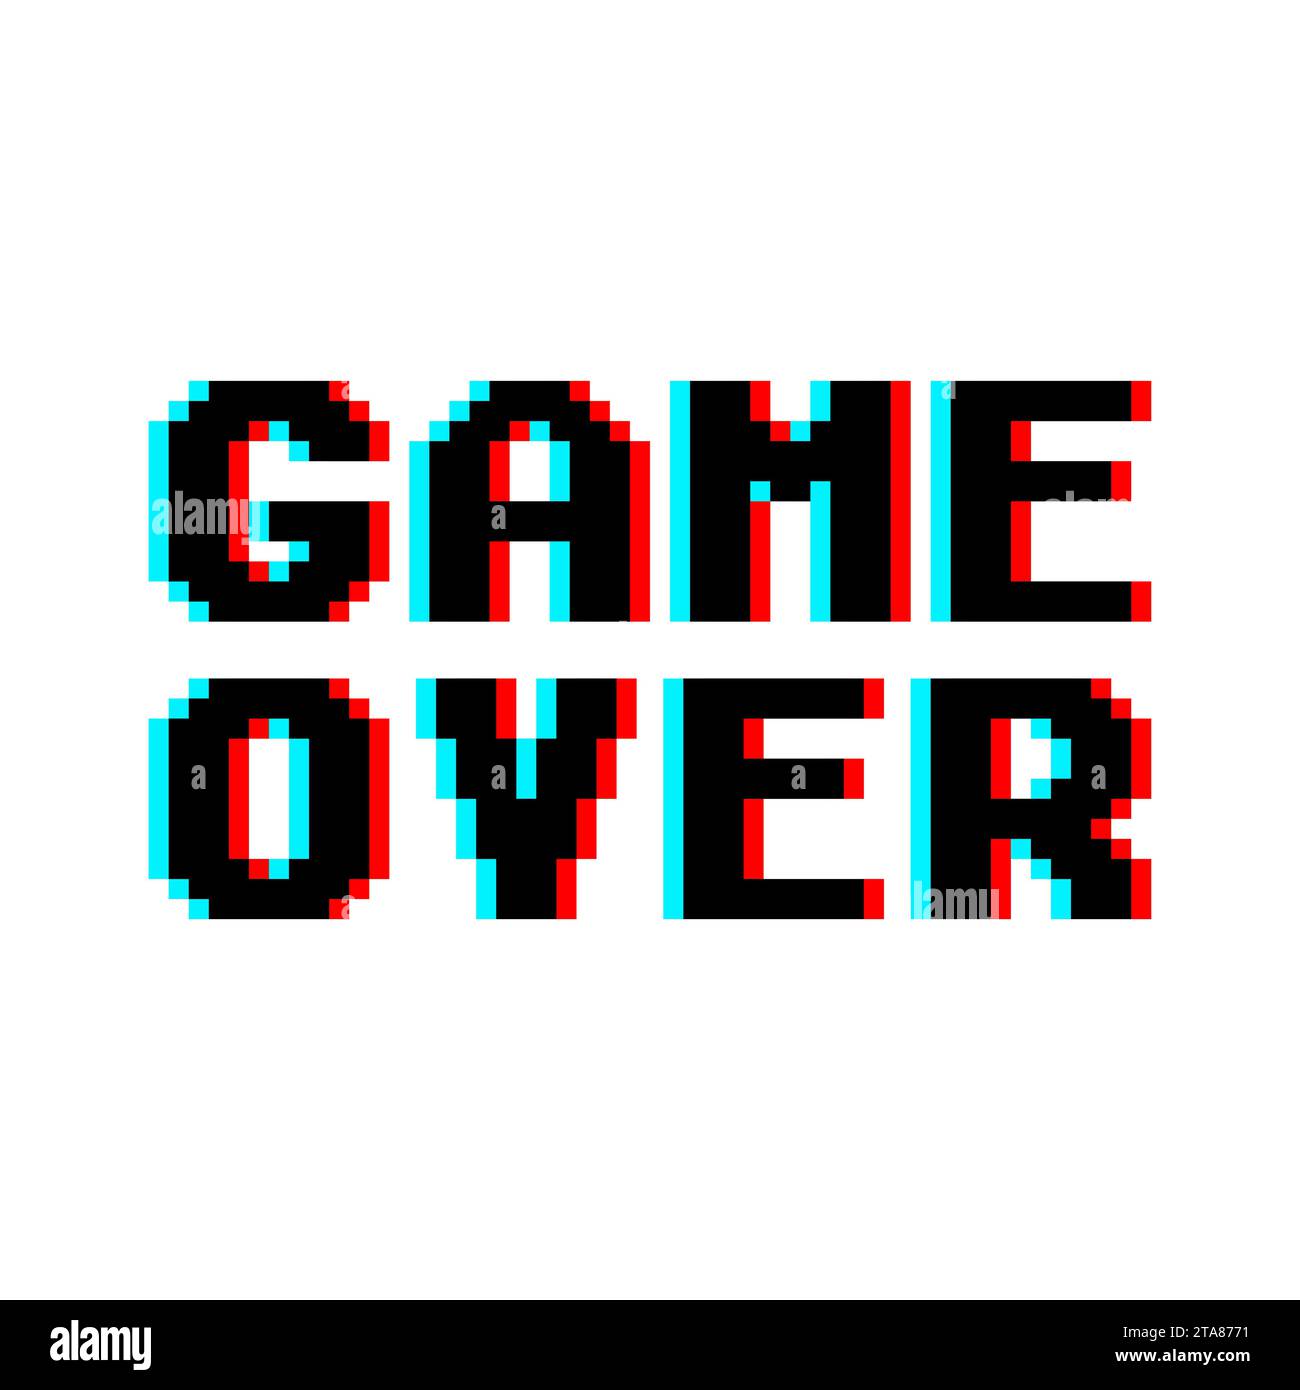 Spiel-over in Retro-Pixel-Art-Design Glitch und Rauschen Stil isoliert auf weißem Hintergrund. Konzept des Levelfinals im virtuellen Gaming Stock Vektor